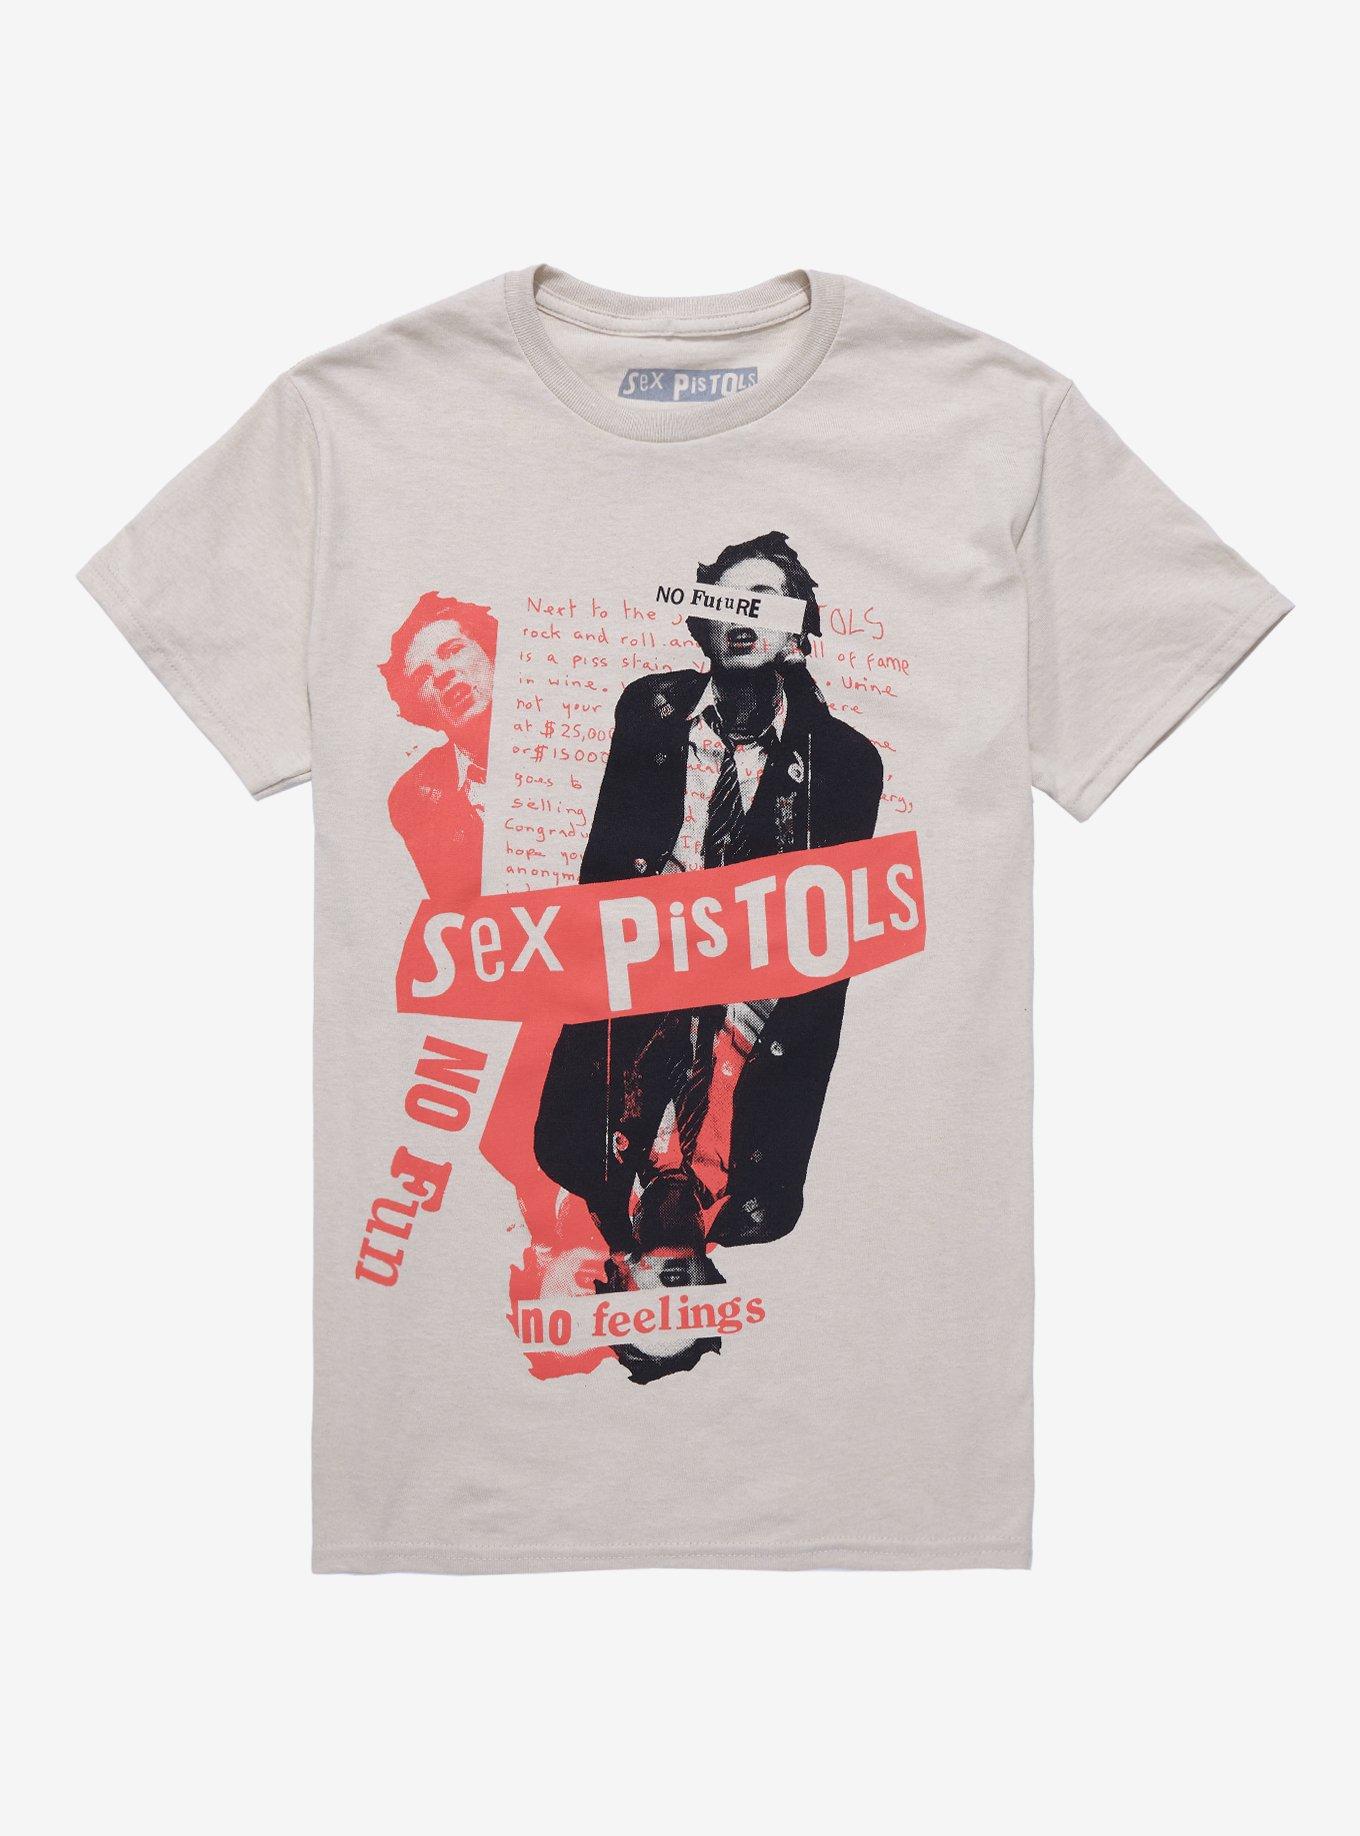 Sex Pistols No Future Boyfriend Fit Girls T-Shirt, NATURAL, hi-res